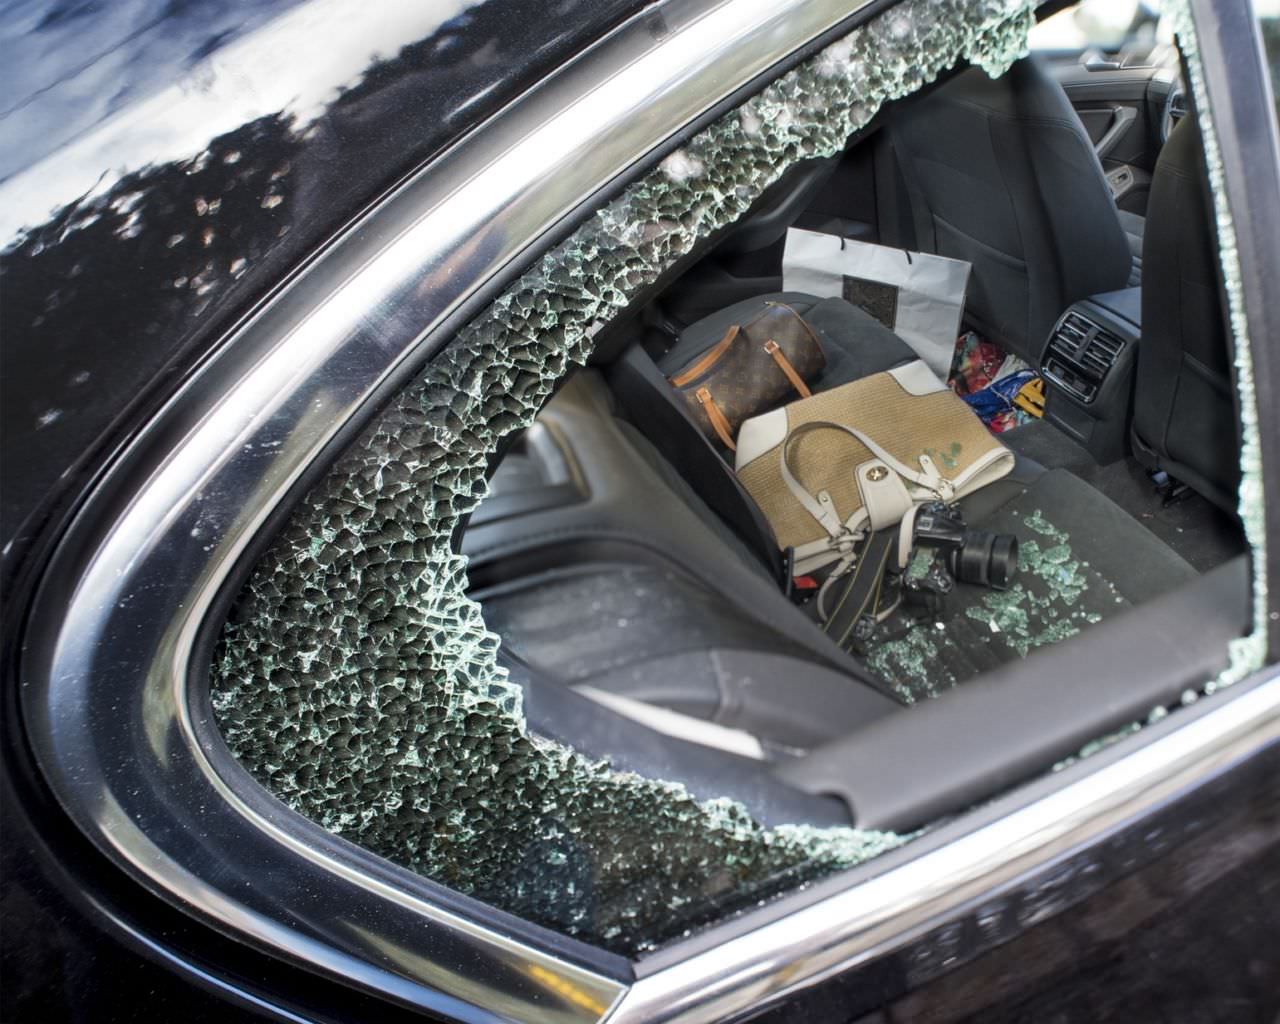 Um sich vor Einbrüchen in den PKW zu schützen, sollte man Wertsachen nie sichtbar im Fahrzeug zurücklassen.